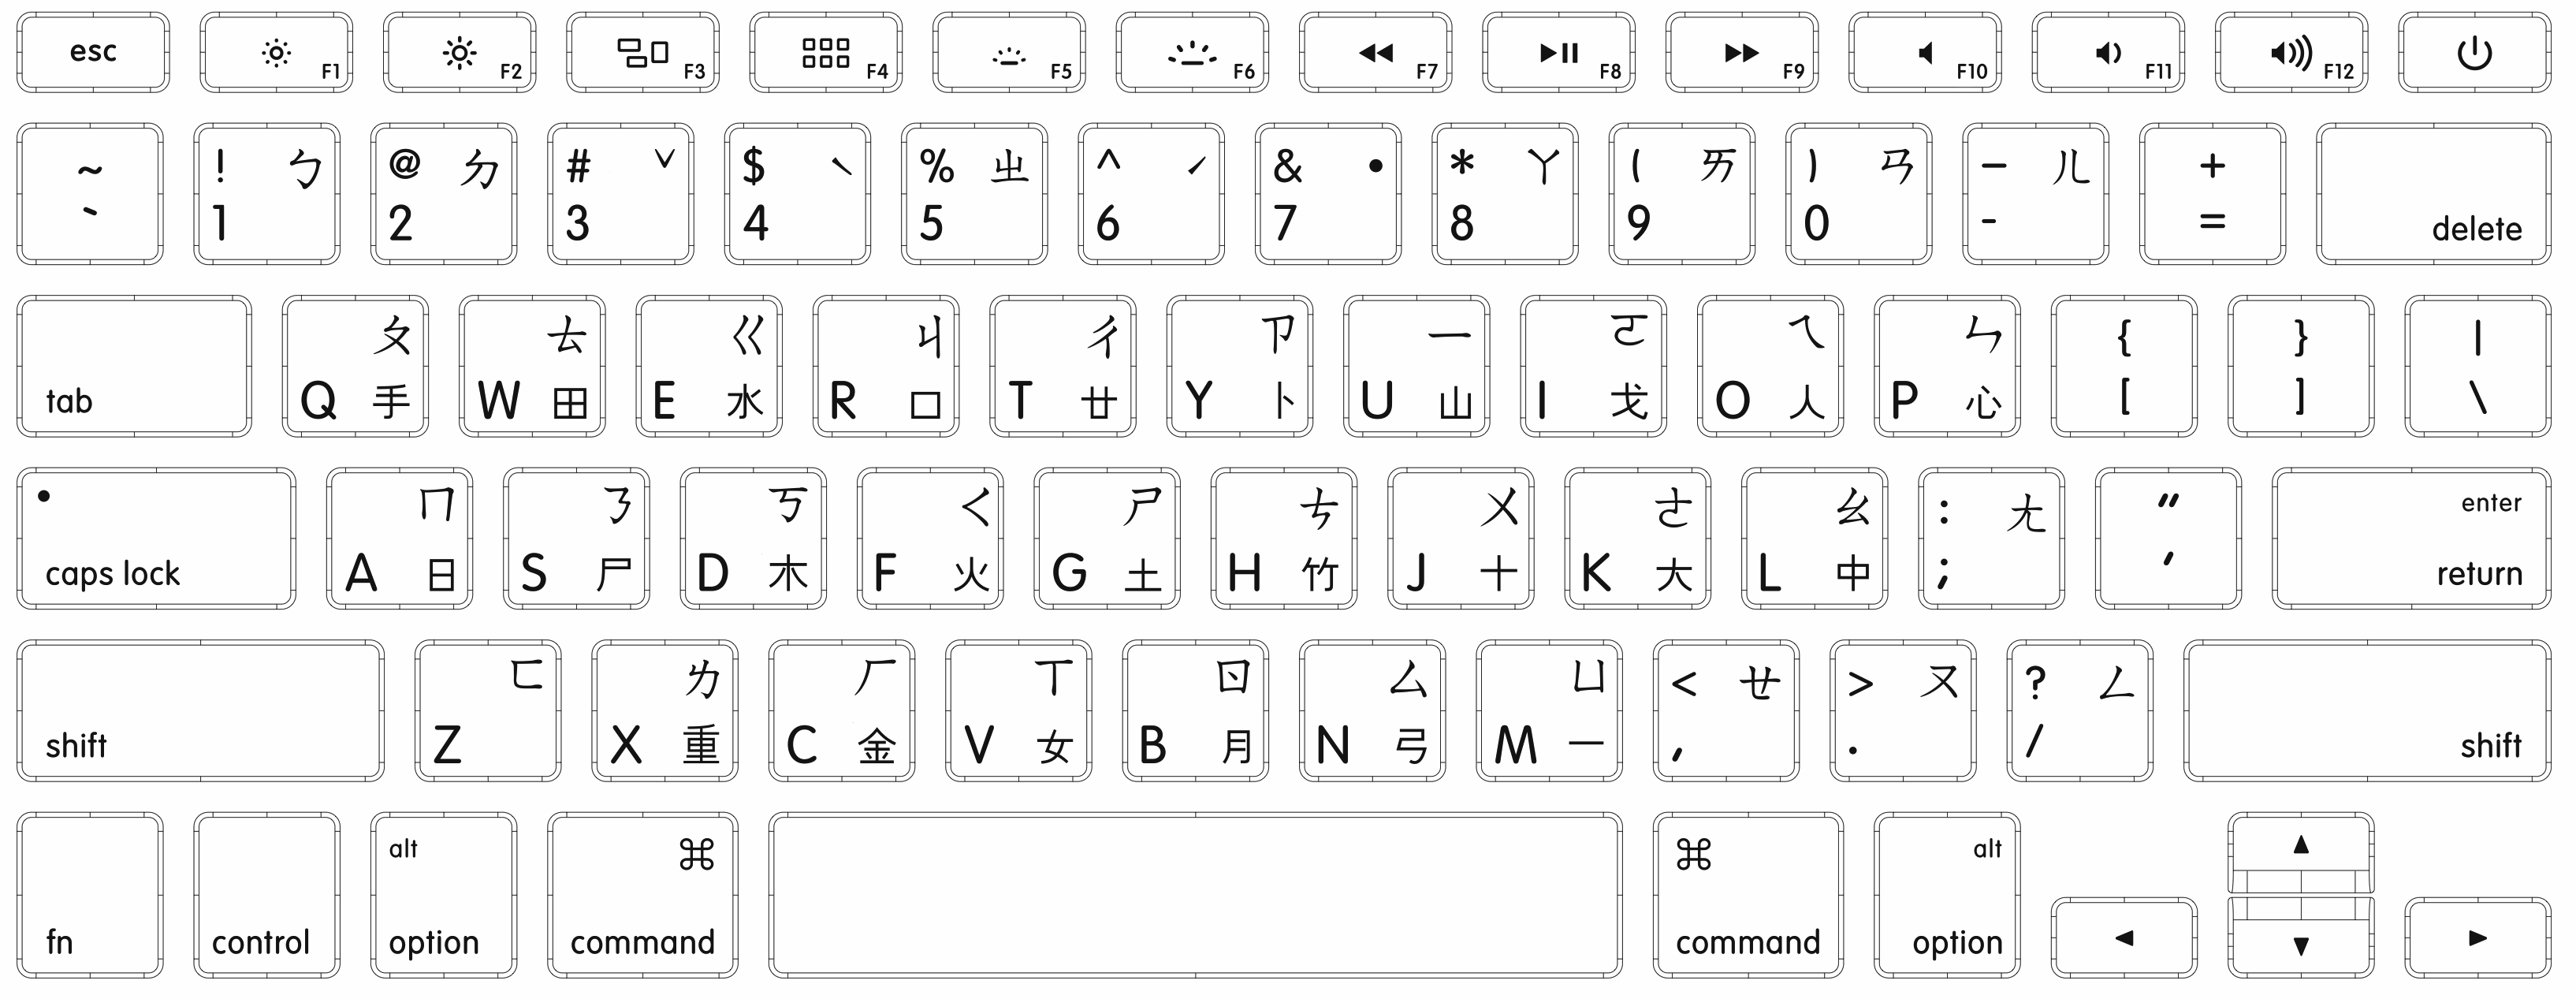 Taiwanese keyboard visual layout